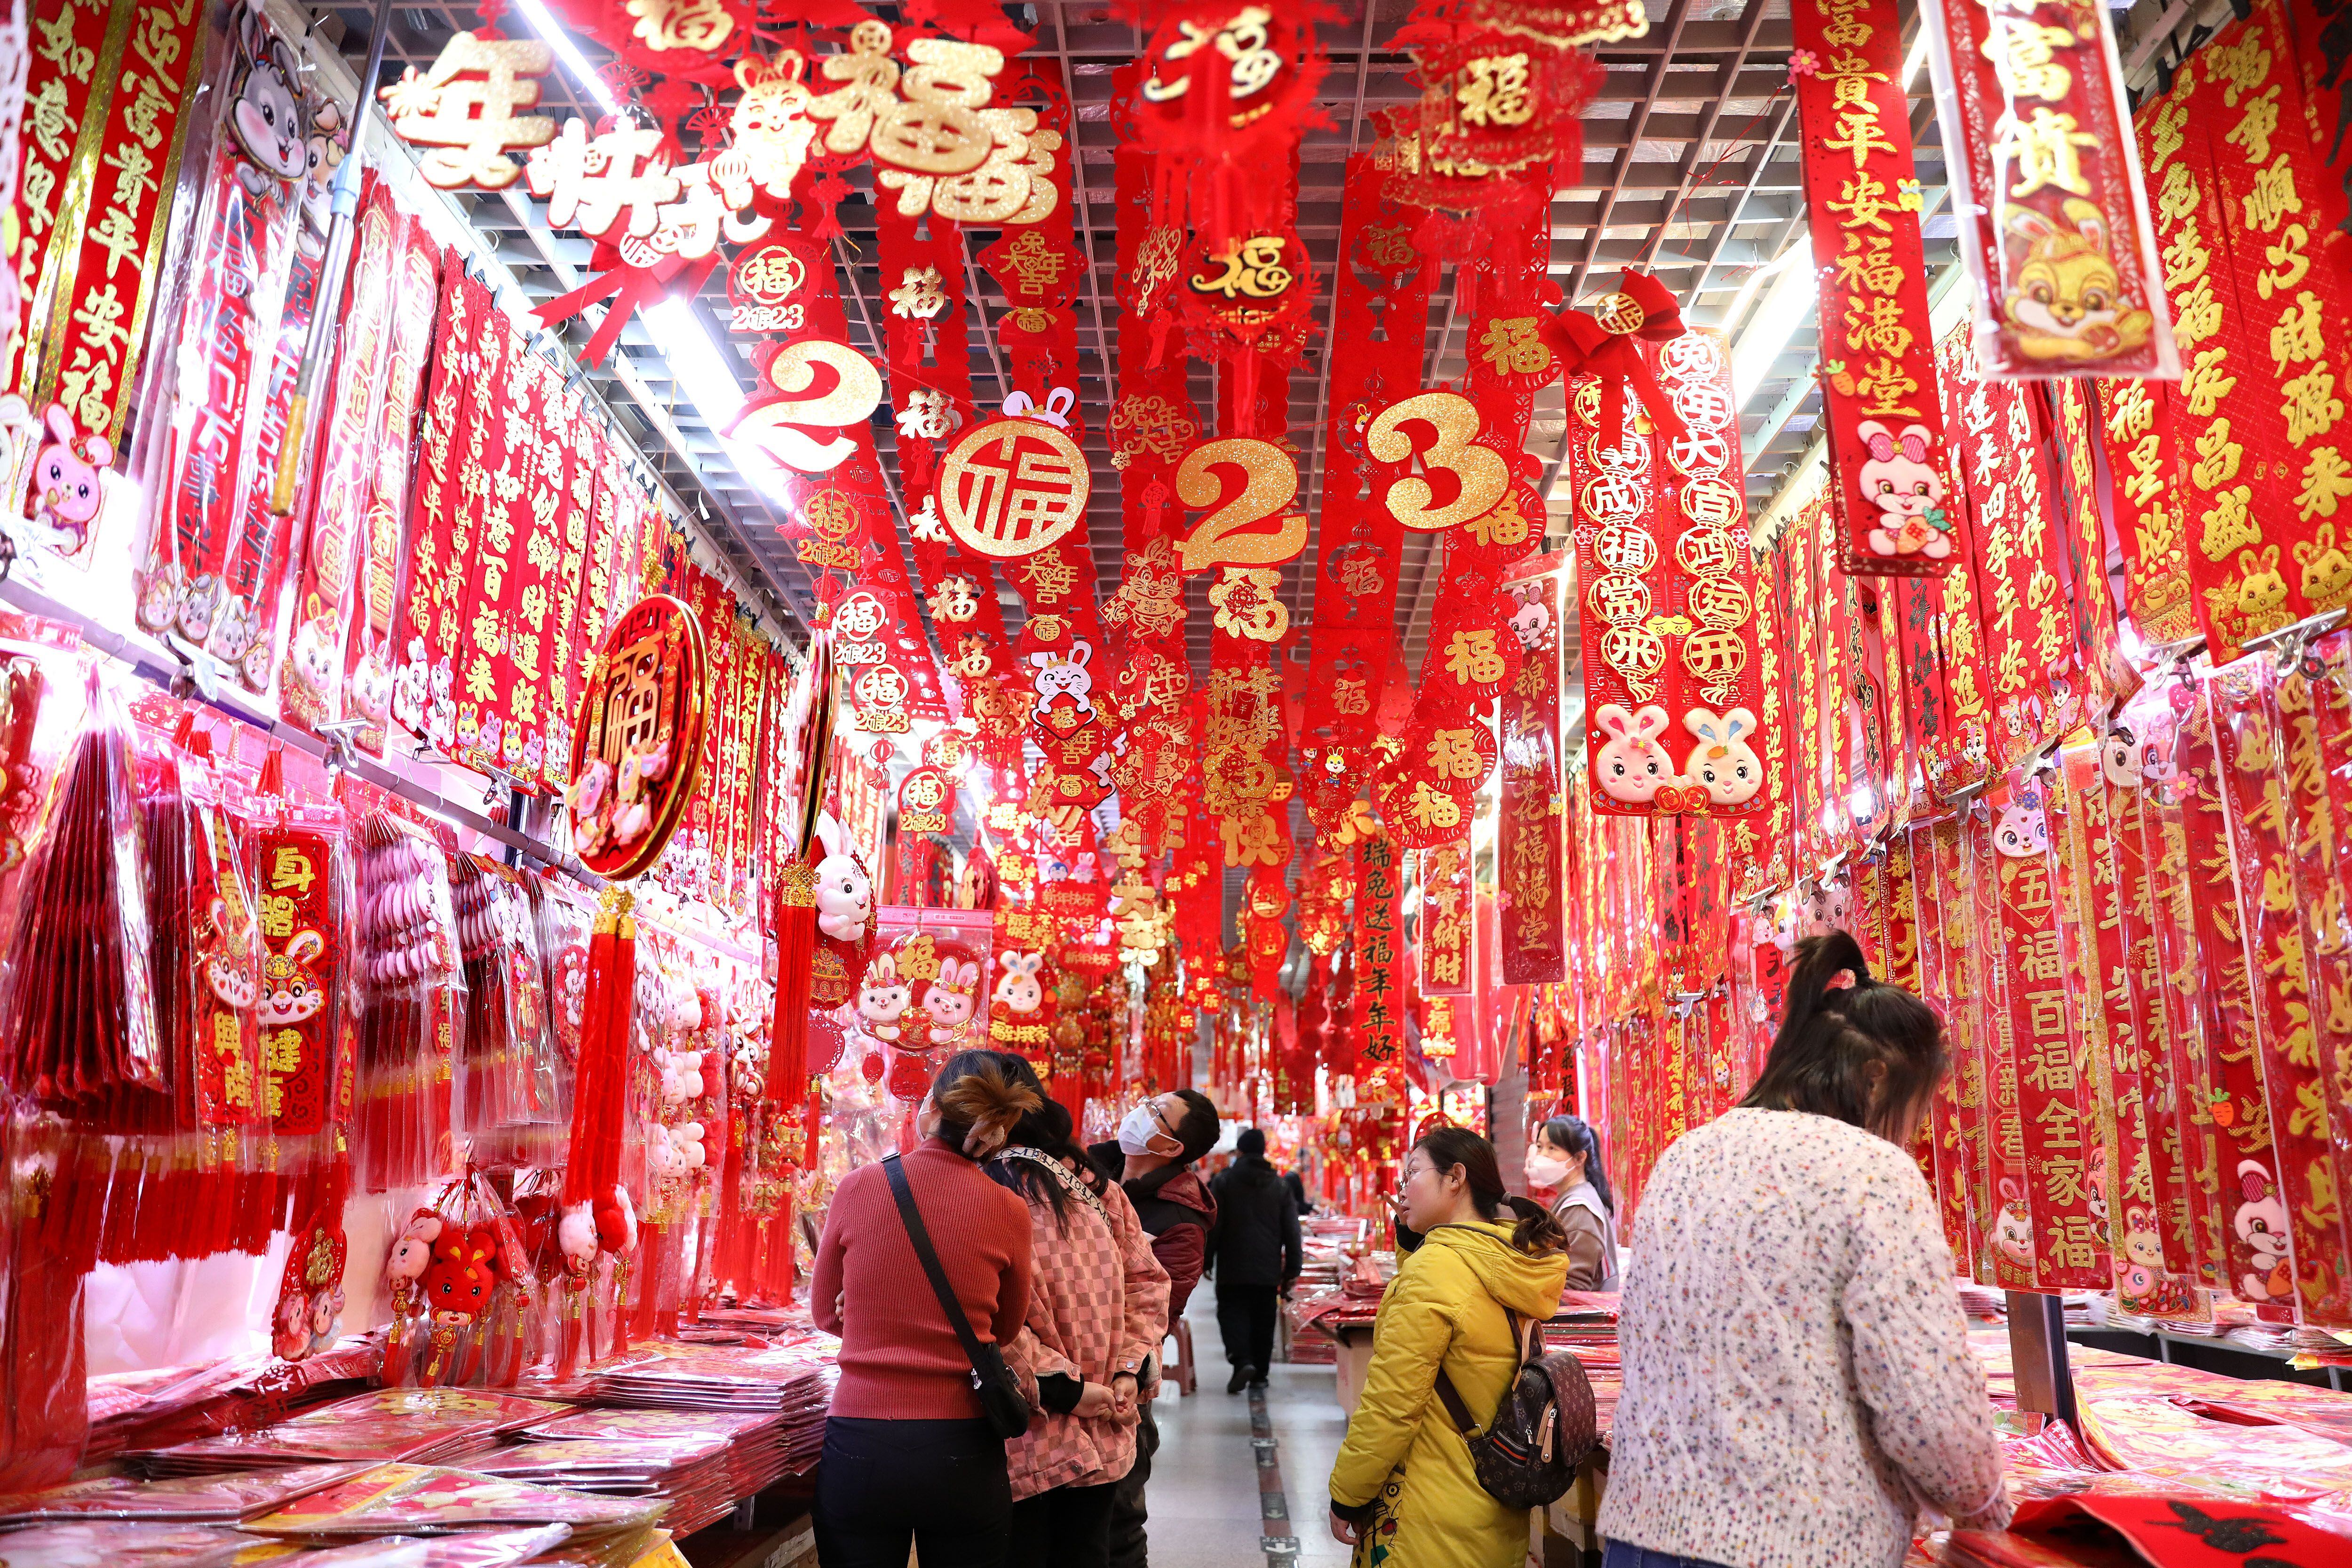 Clientes realizan compras en un mercado, en Shenyang, en la provincia de Liaoning, en el noreste de China, el 11 de enero de 2023. Los mercados de todo el país se encuentran llenos de vitalidad a medida que se acerca el Festival de la Primavera. Foto: Xinhua/Yao Jianfeng